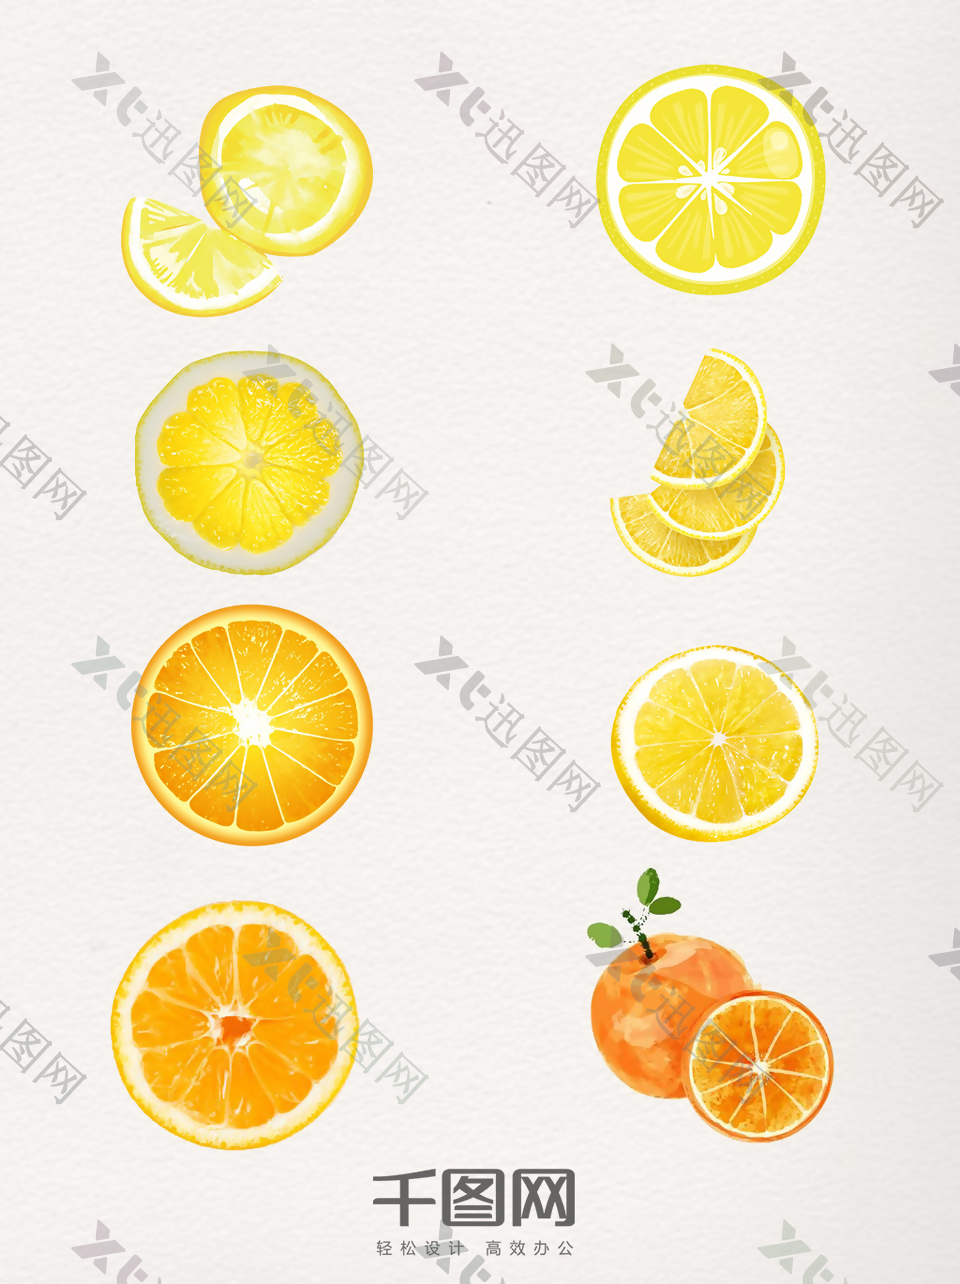 一组形态多样的橘子切片图